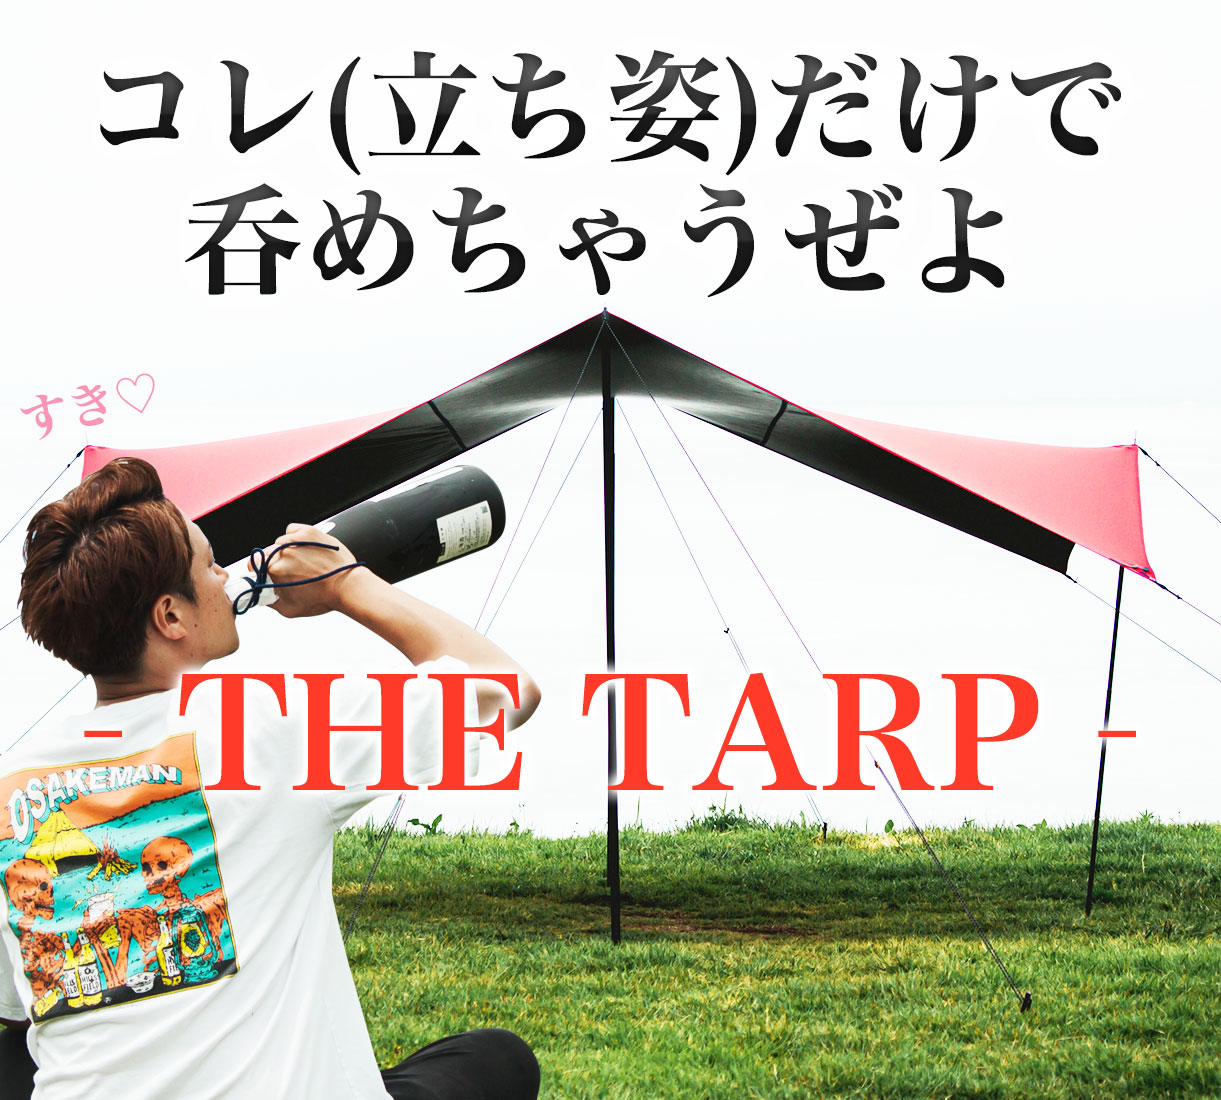 ハイスペックタープ THE TARP -ザ・タープ- レッド | HILLS FIELD 